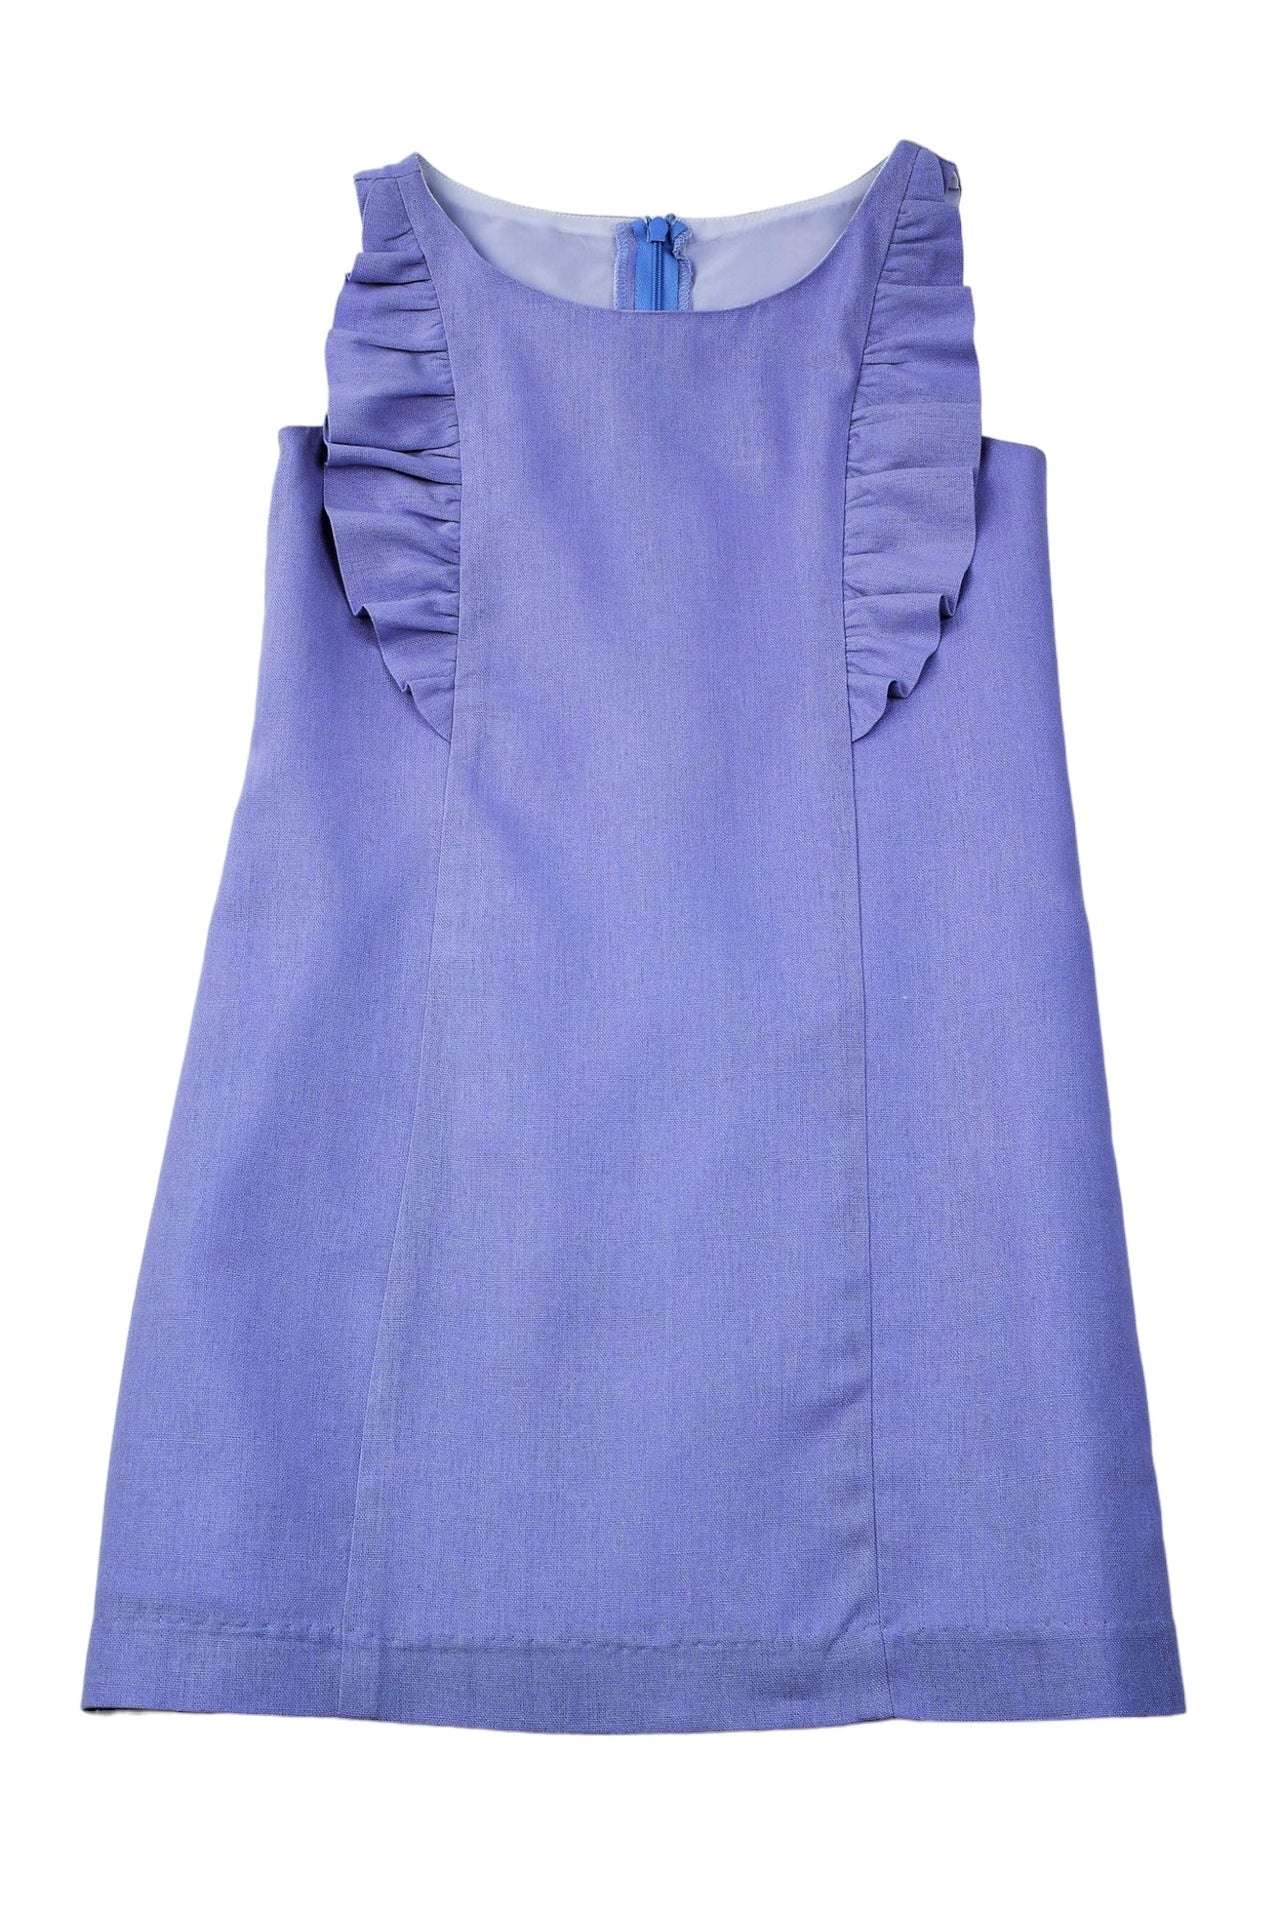 Maggie Breen Lavender Linen Ruffle Dress 70963 5012